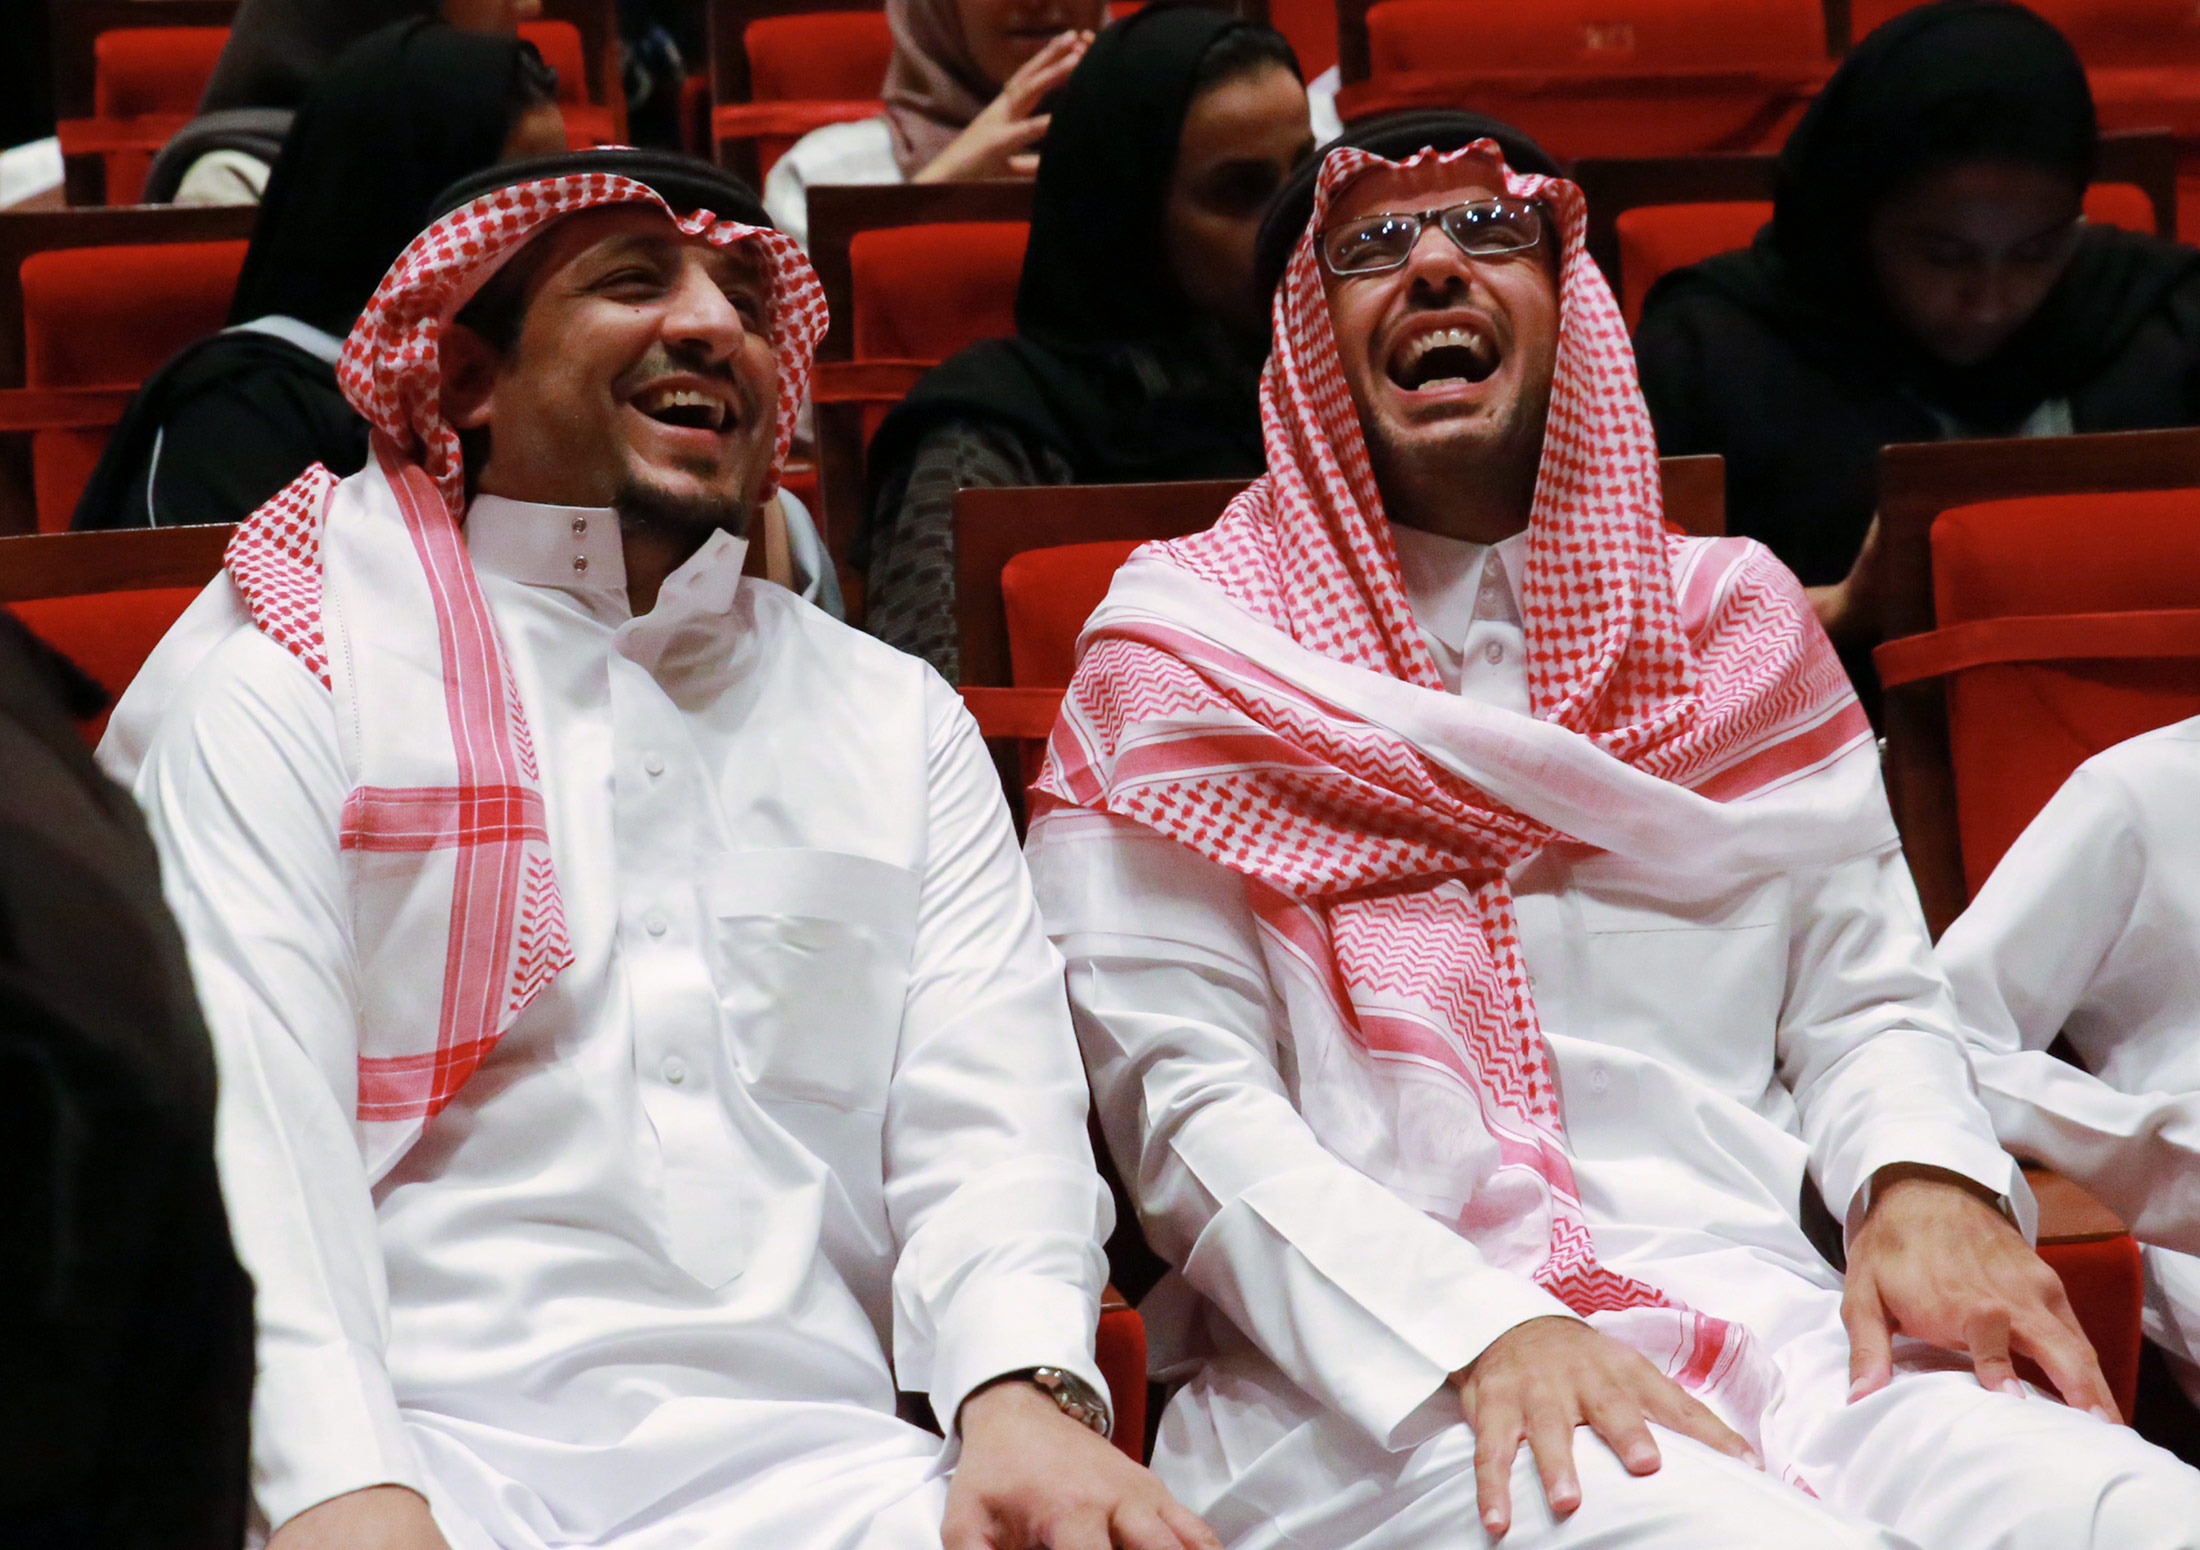 Жители саудовской аравии